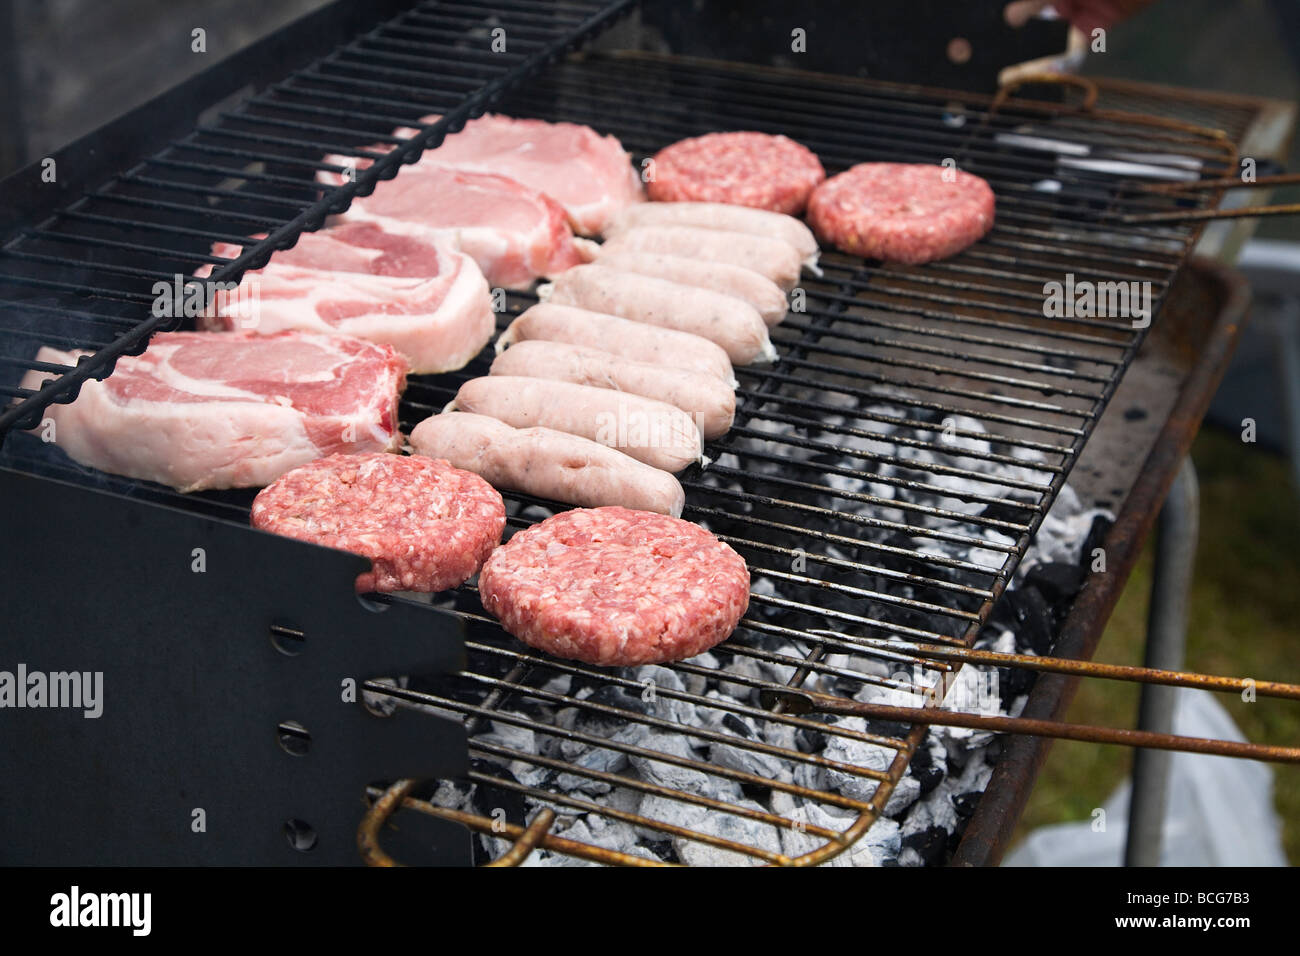 Les viandes fraîches, des hamburgers, des saucisses et côtelettes de porc, la cuisson sur un barbecue. Angleterre, Royaume-Uni. Banque D'Images